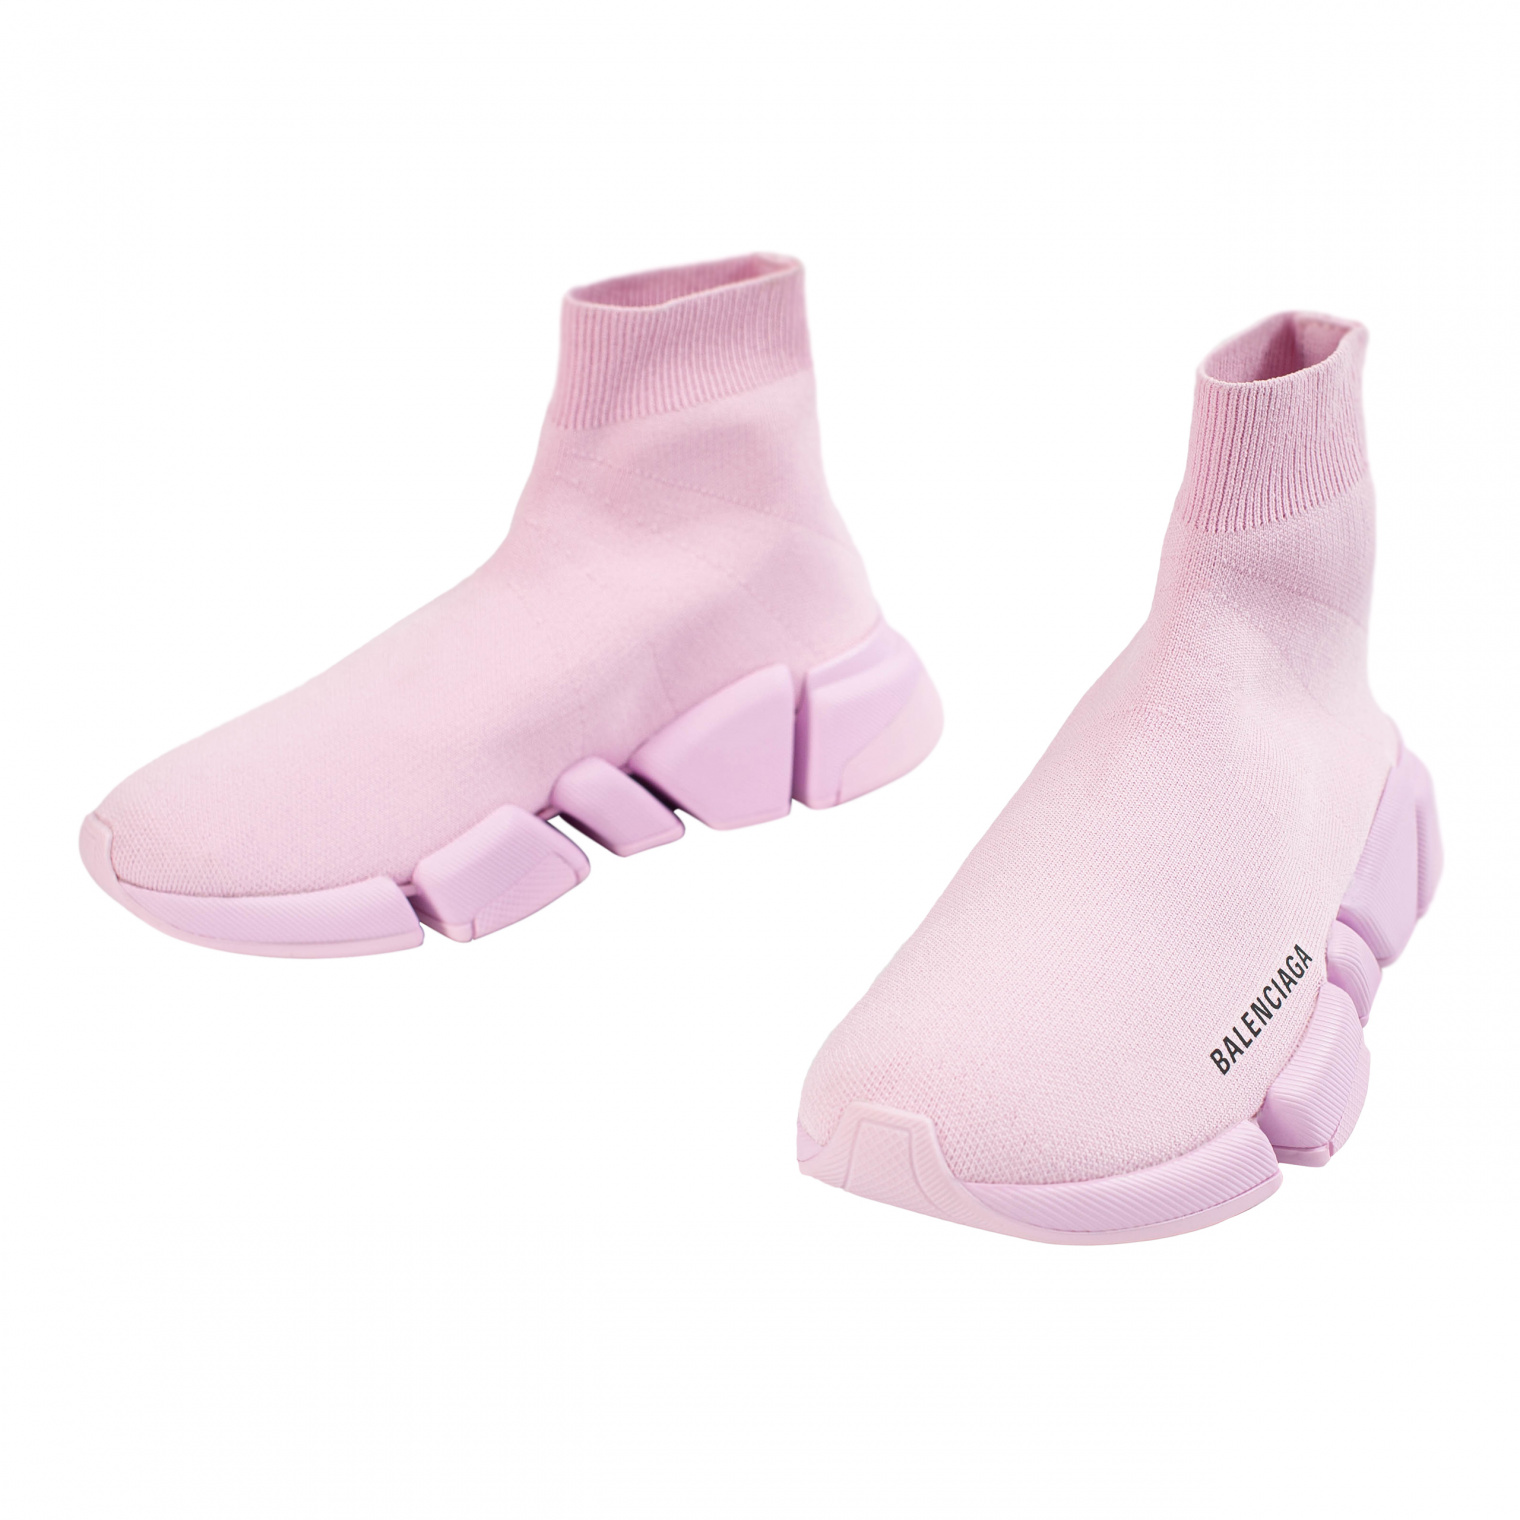 Balenciaga Speed 2.0 Pink Sneaker